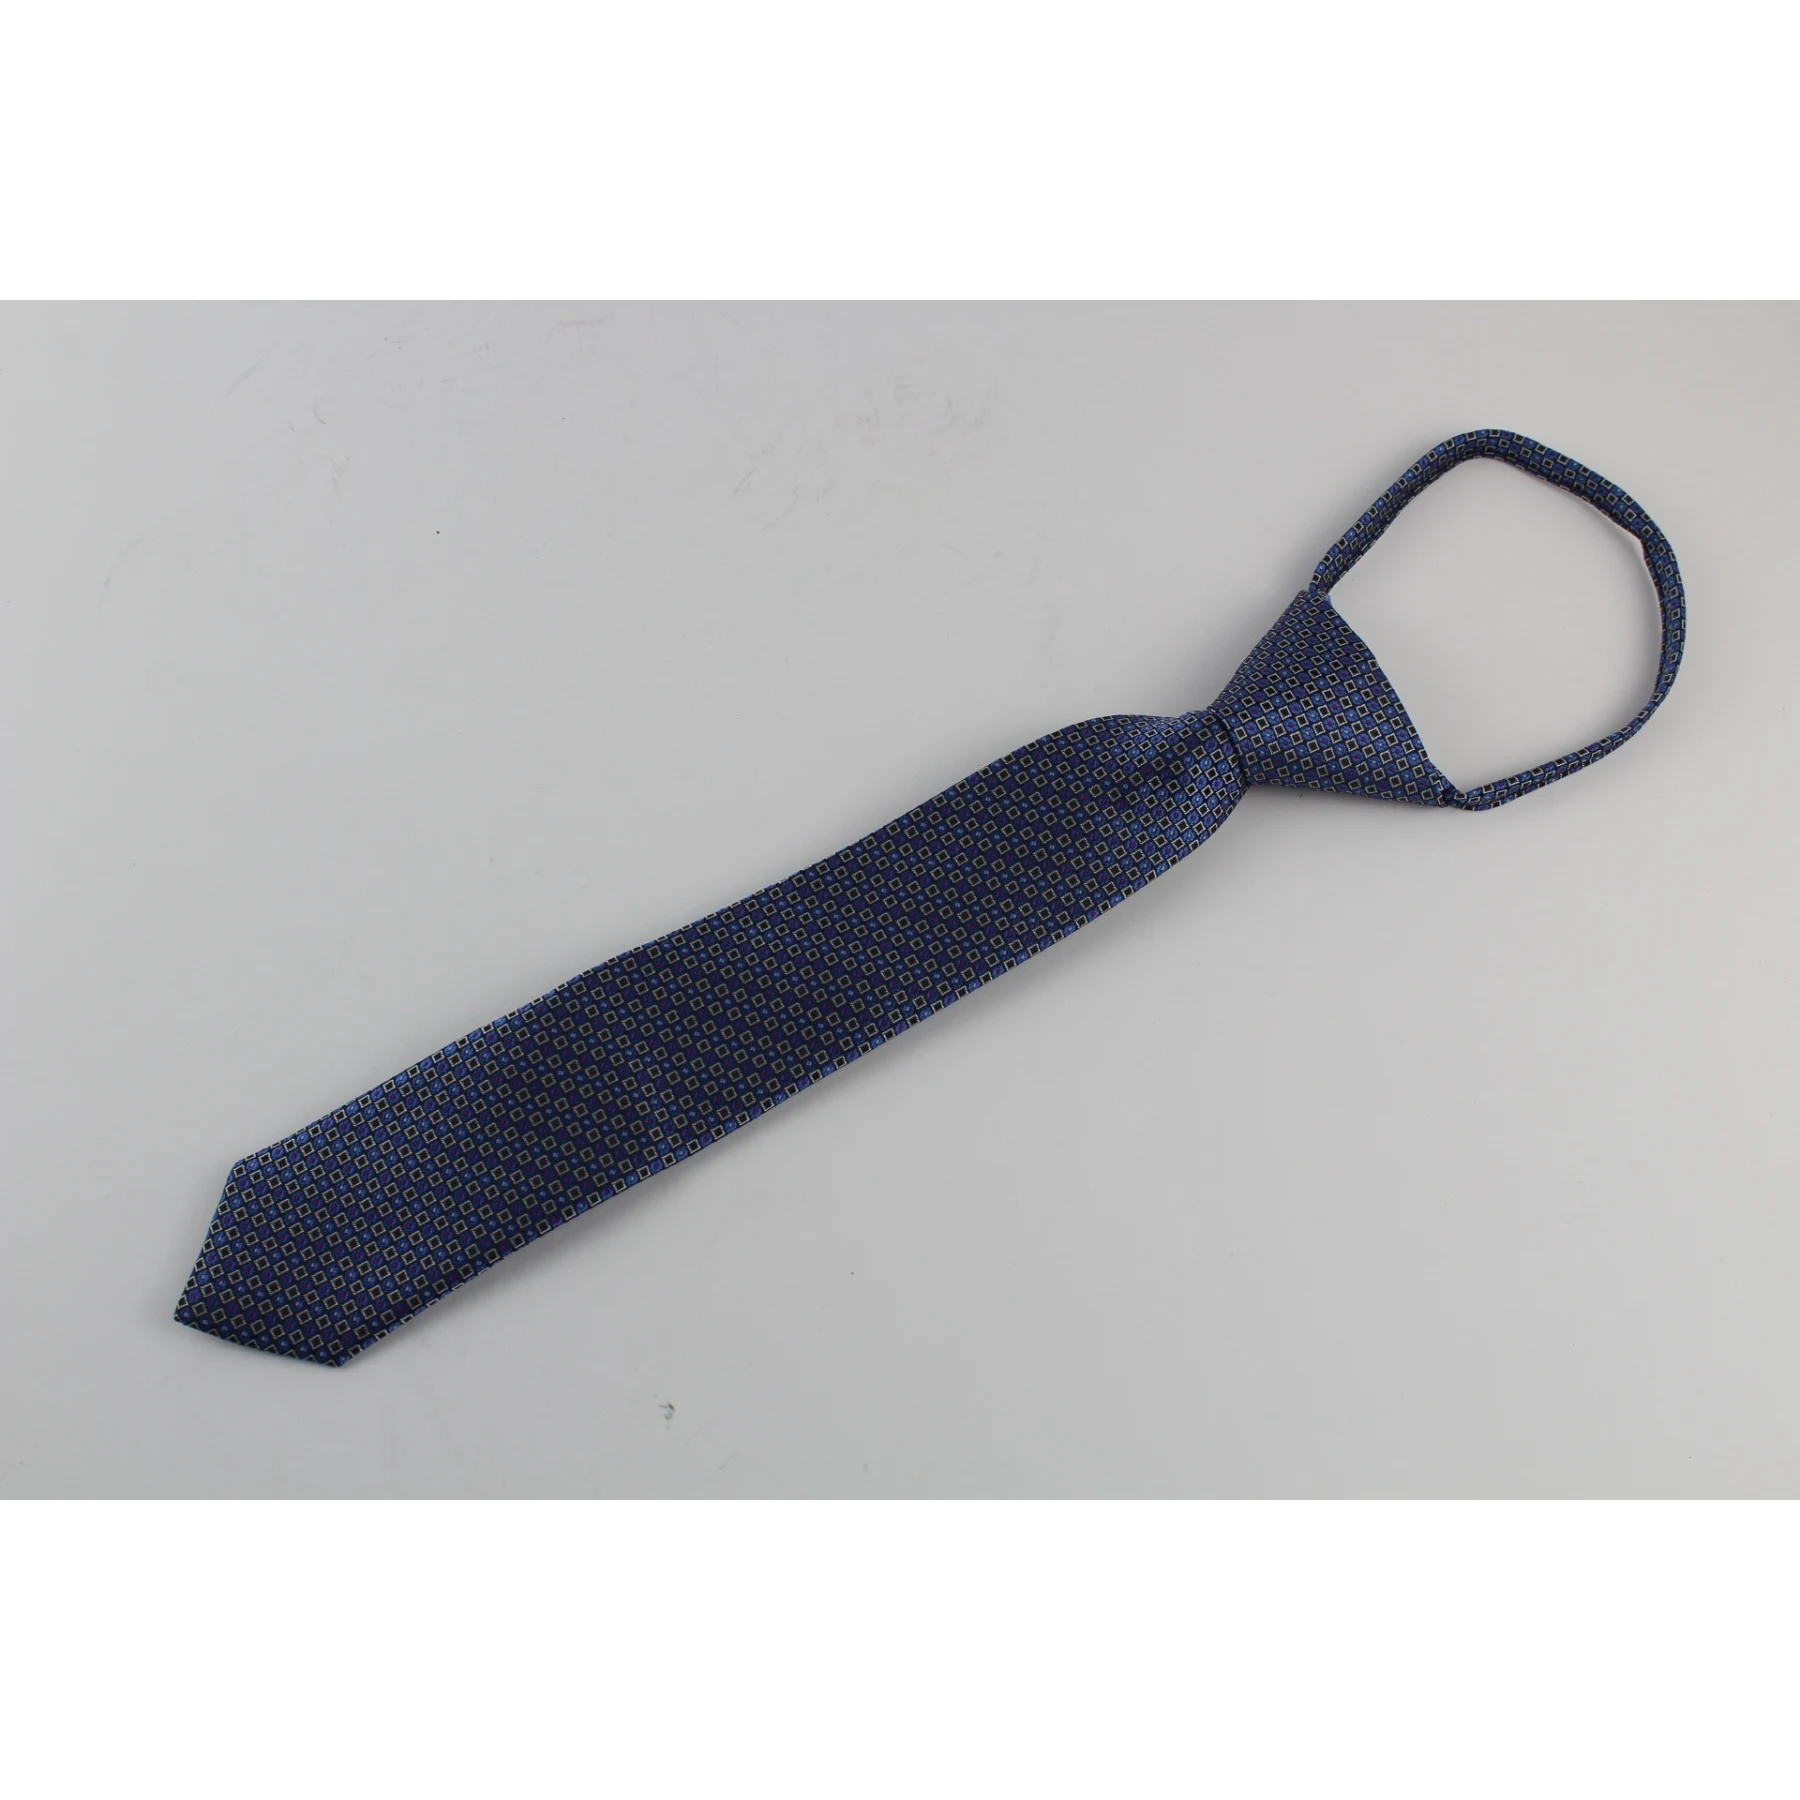 Tie teenage Stilmark on tape with lock item No. 3358 29